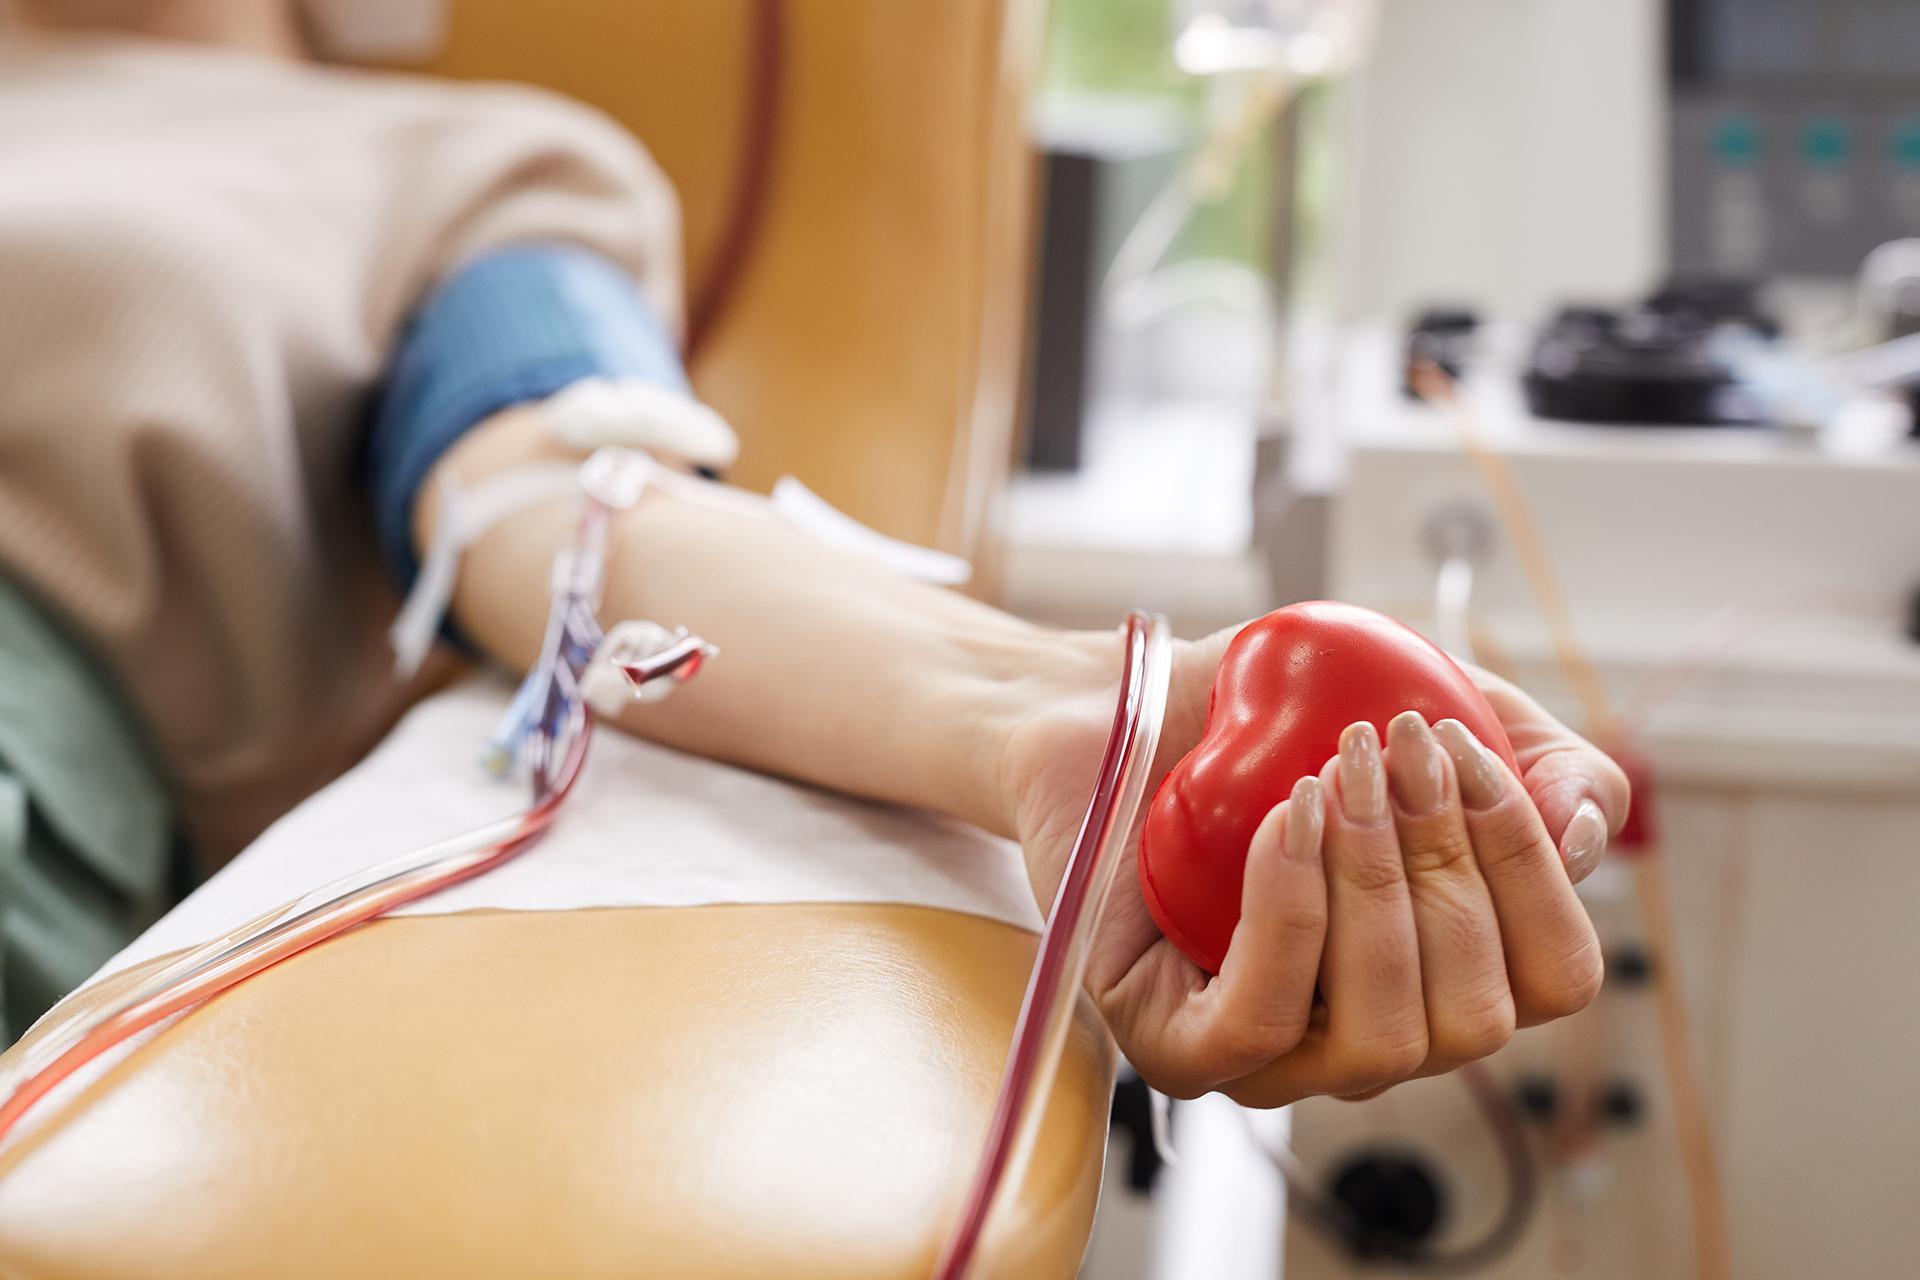 हा जागतिक रक्तदाता दिन, रक्त द्या आणि जीव वाचवा. येथे का आणि कसे आहे